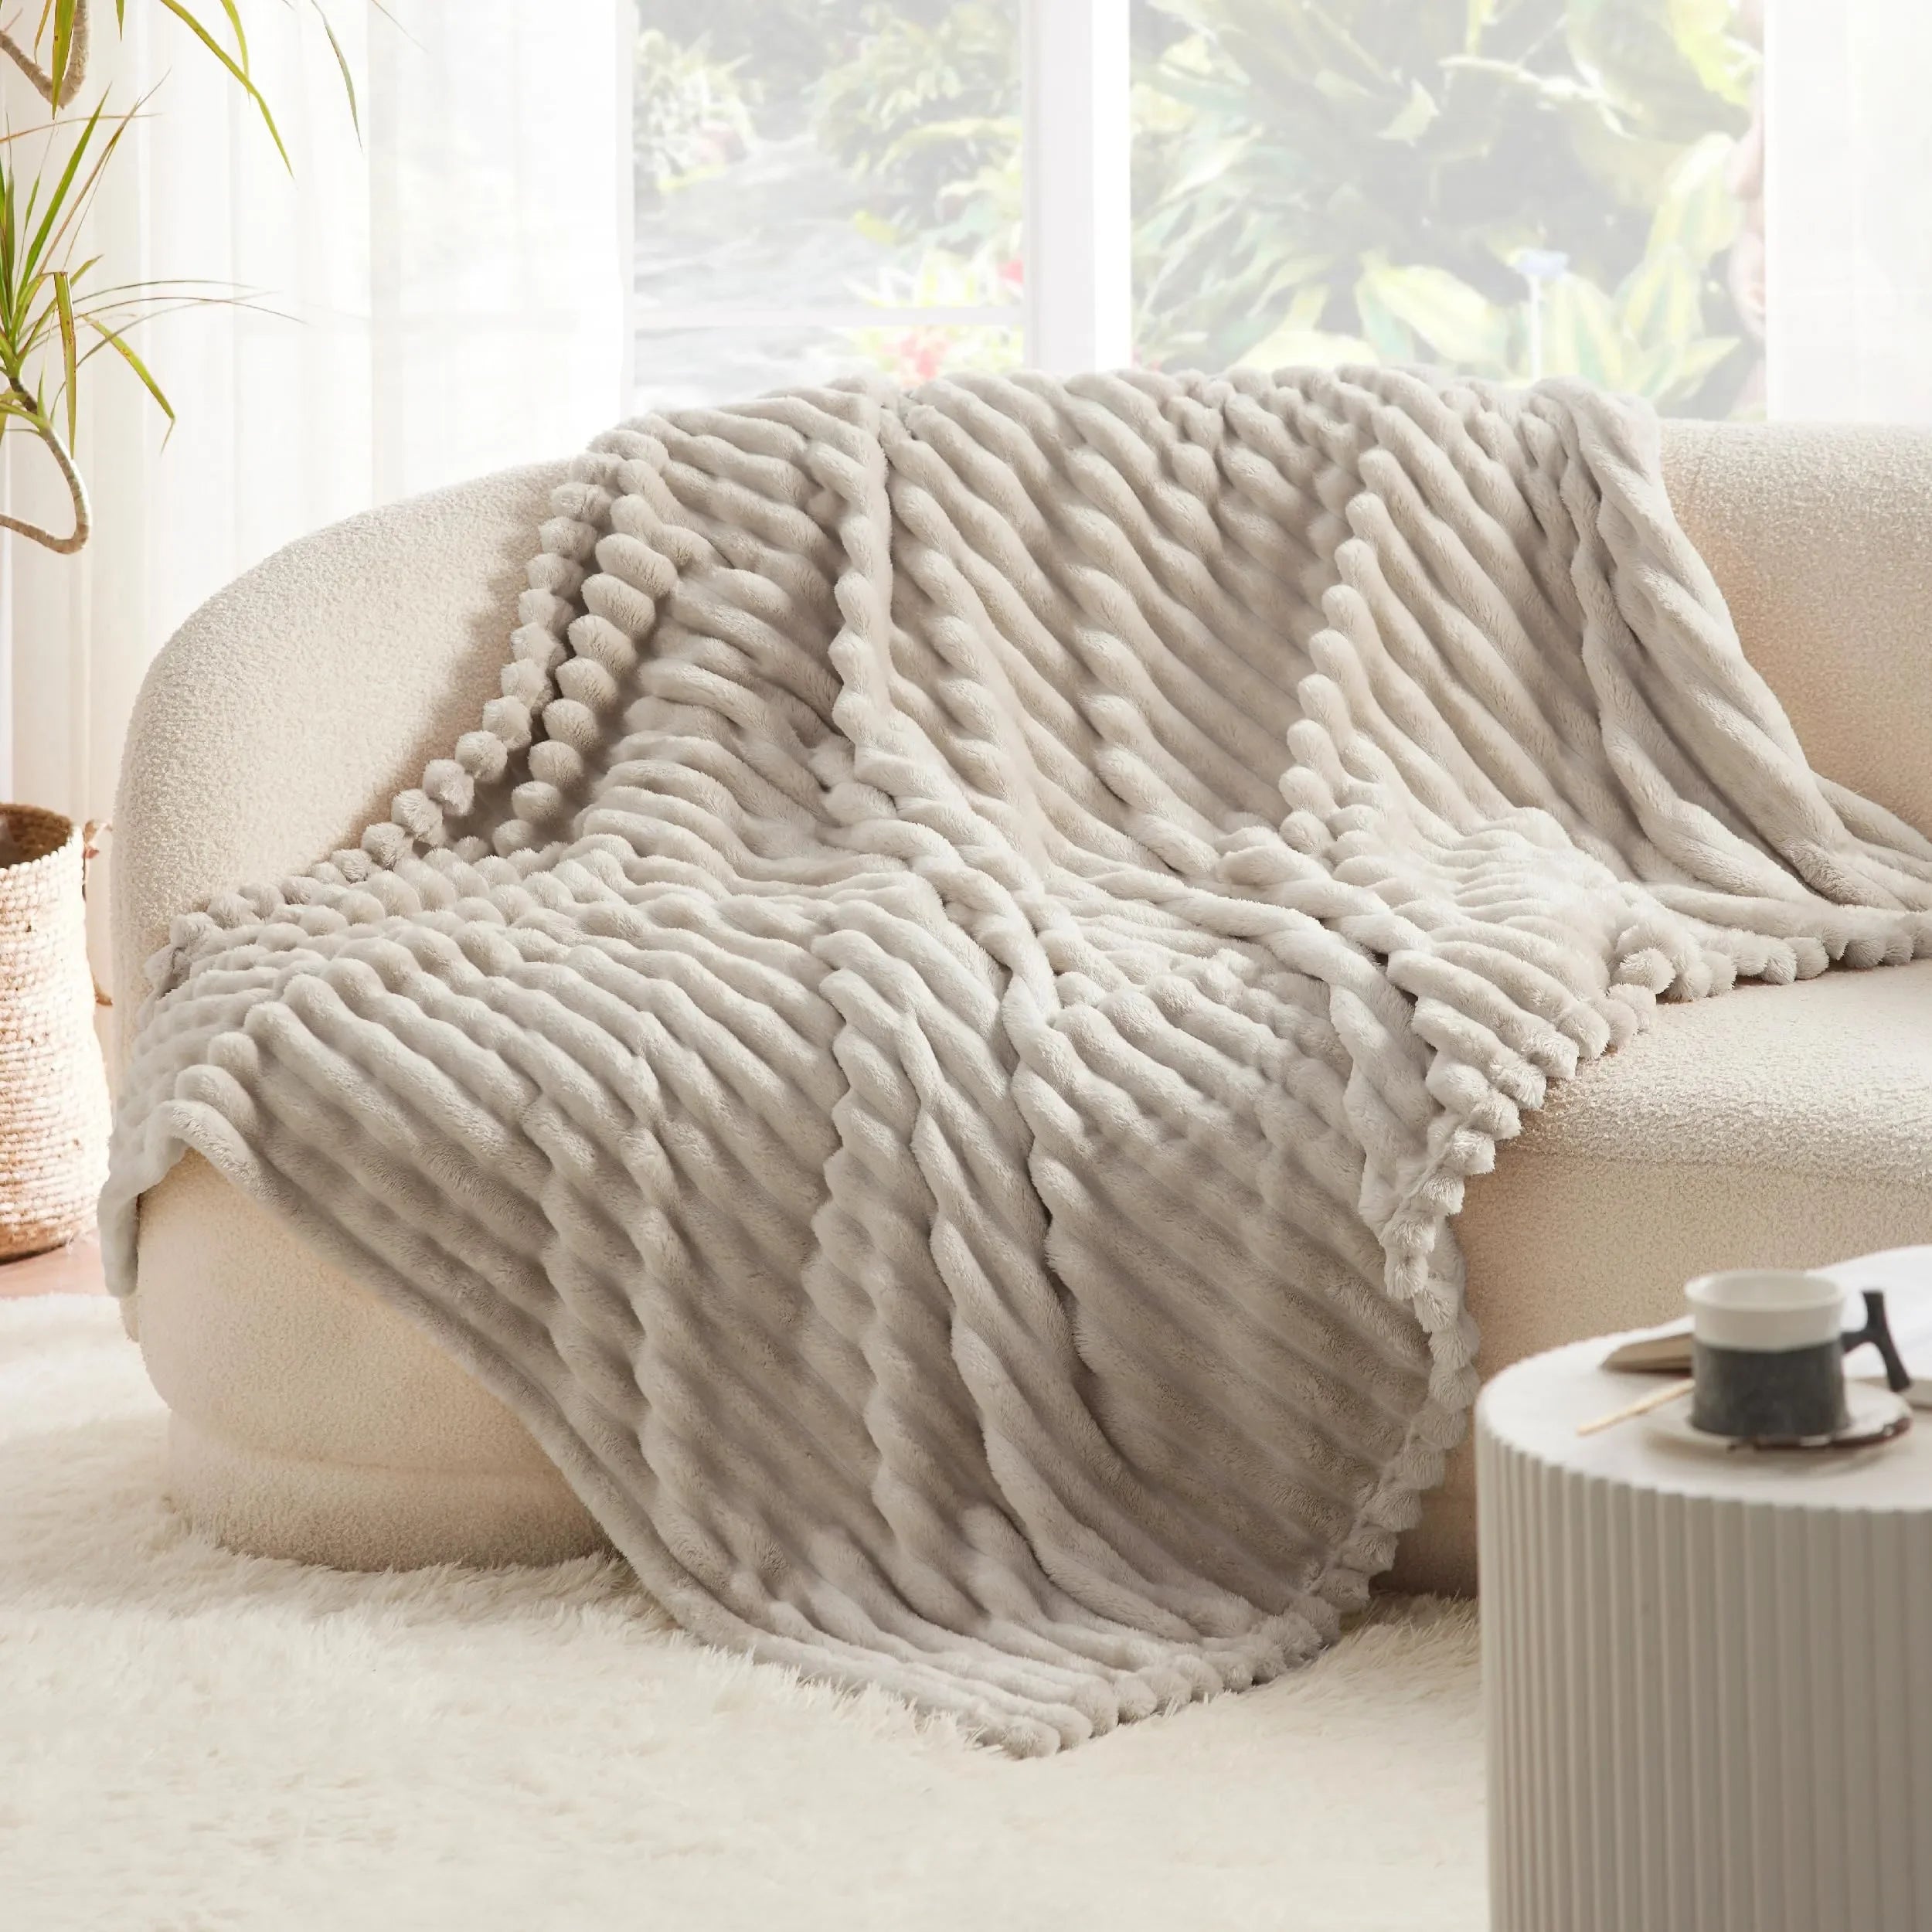 Flauschige Kaninchen-Decke – Gemütliche Decke für Sofa und Freizeit